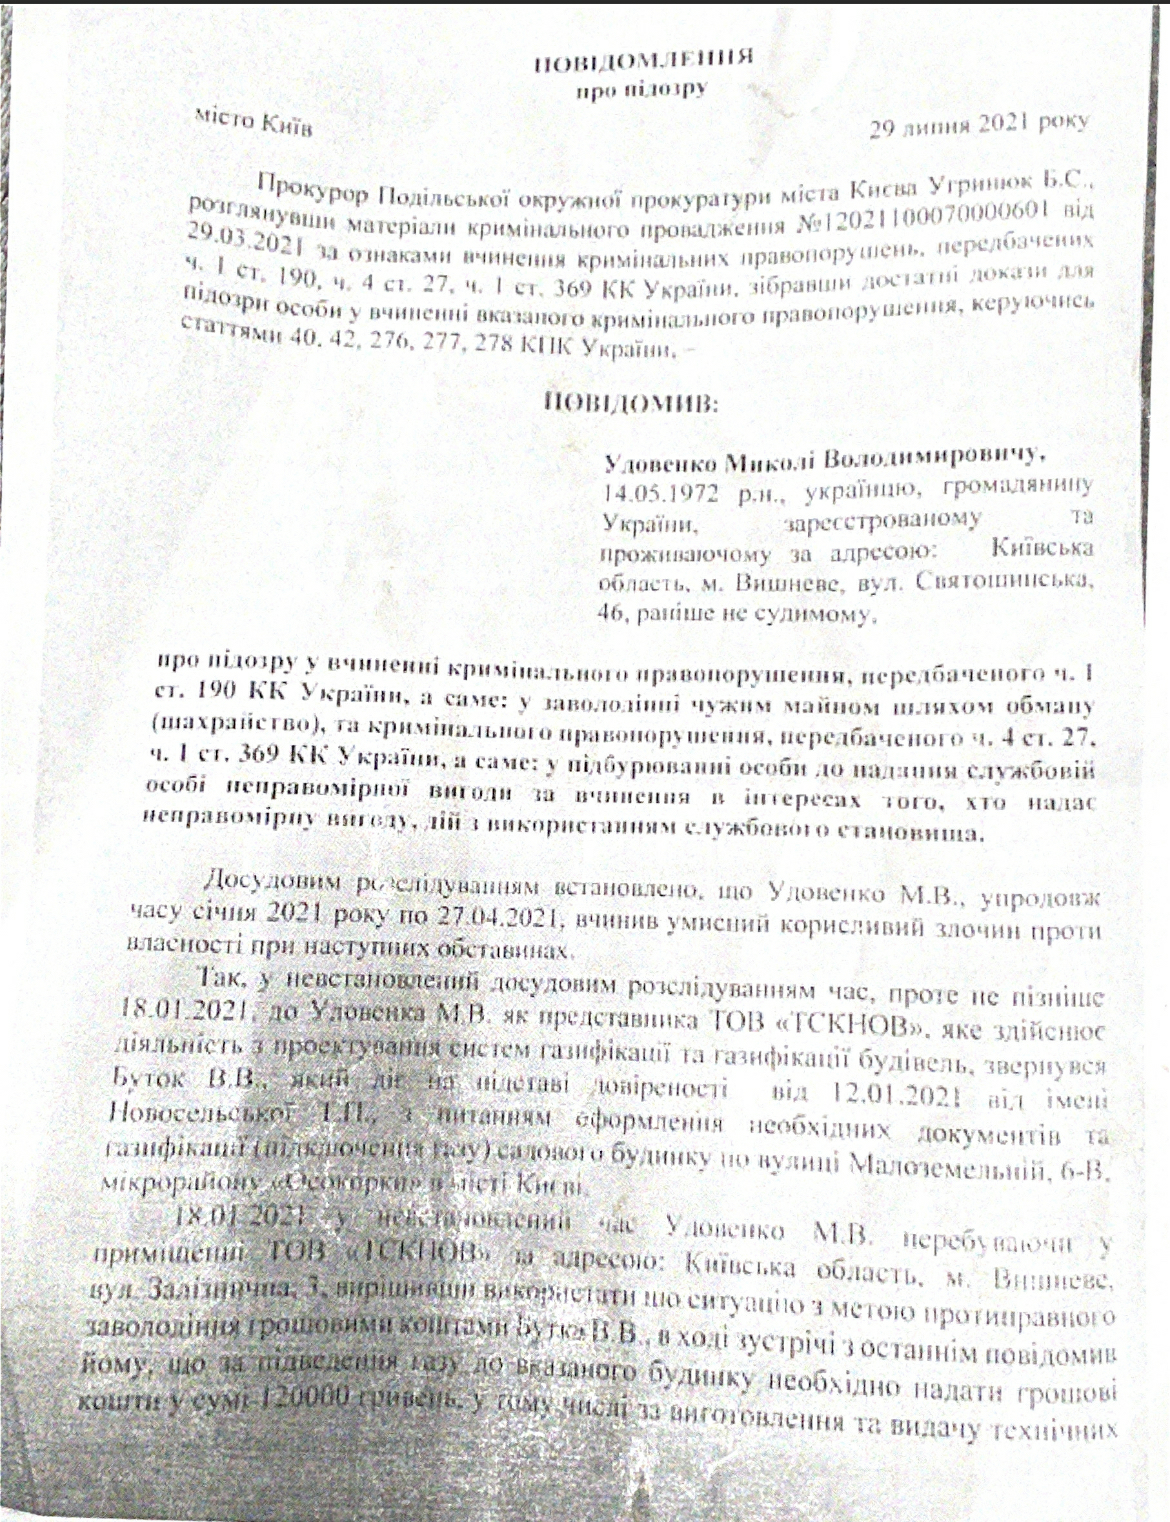 Прокуратура Киева сообщила о подозрении сотруднику компании по проектированию систем газификации - фото 2